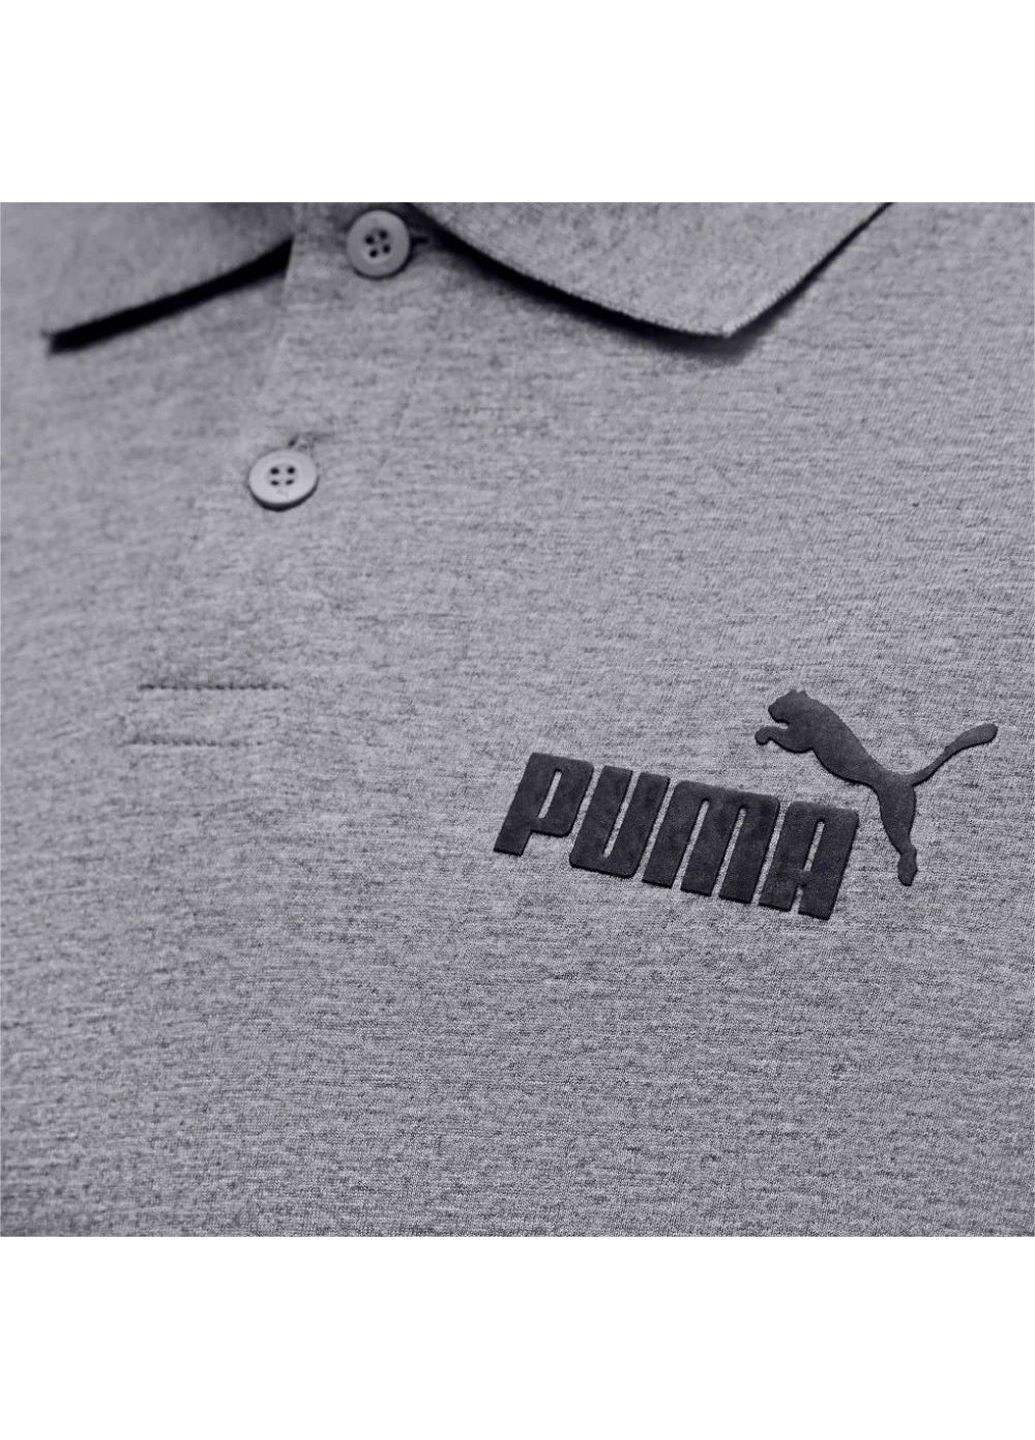 Серая футболка-мужское поло ess jersey polo 58667603 для мужчин Puma